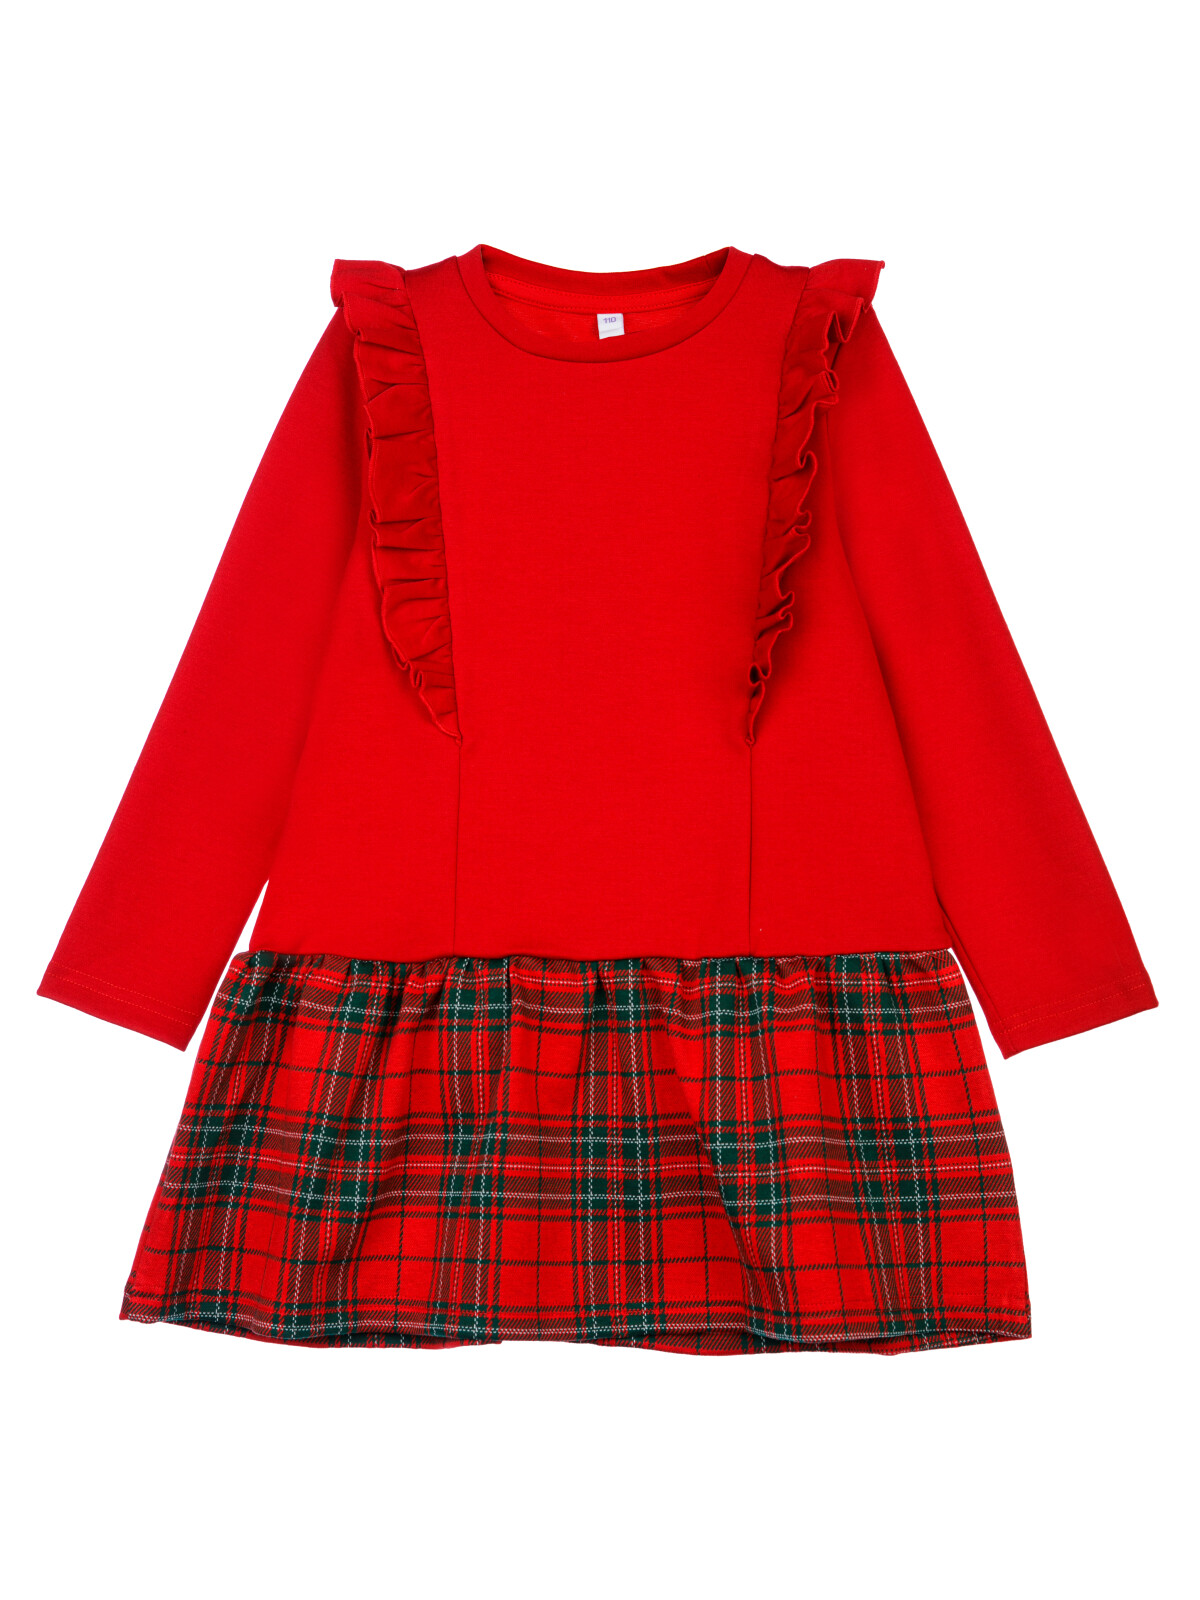 Платье трикотажное для девочек PlayToday, красный,цветной, 98